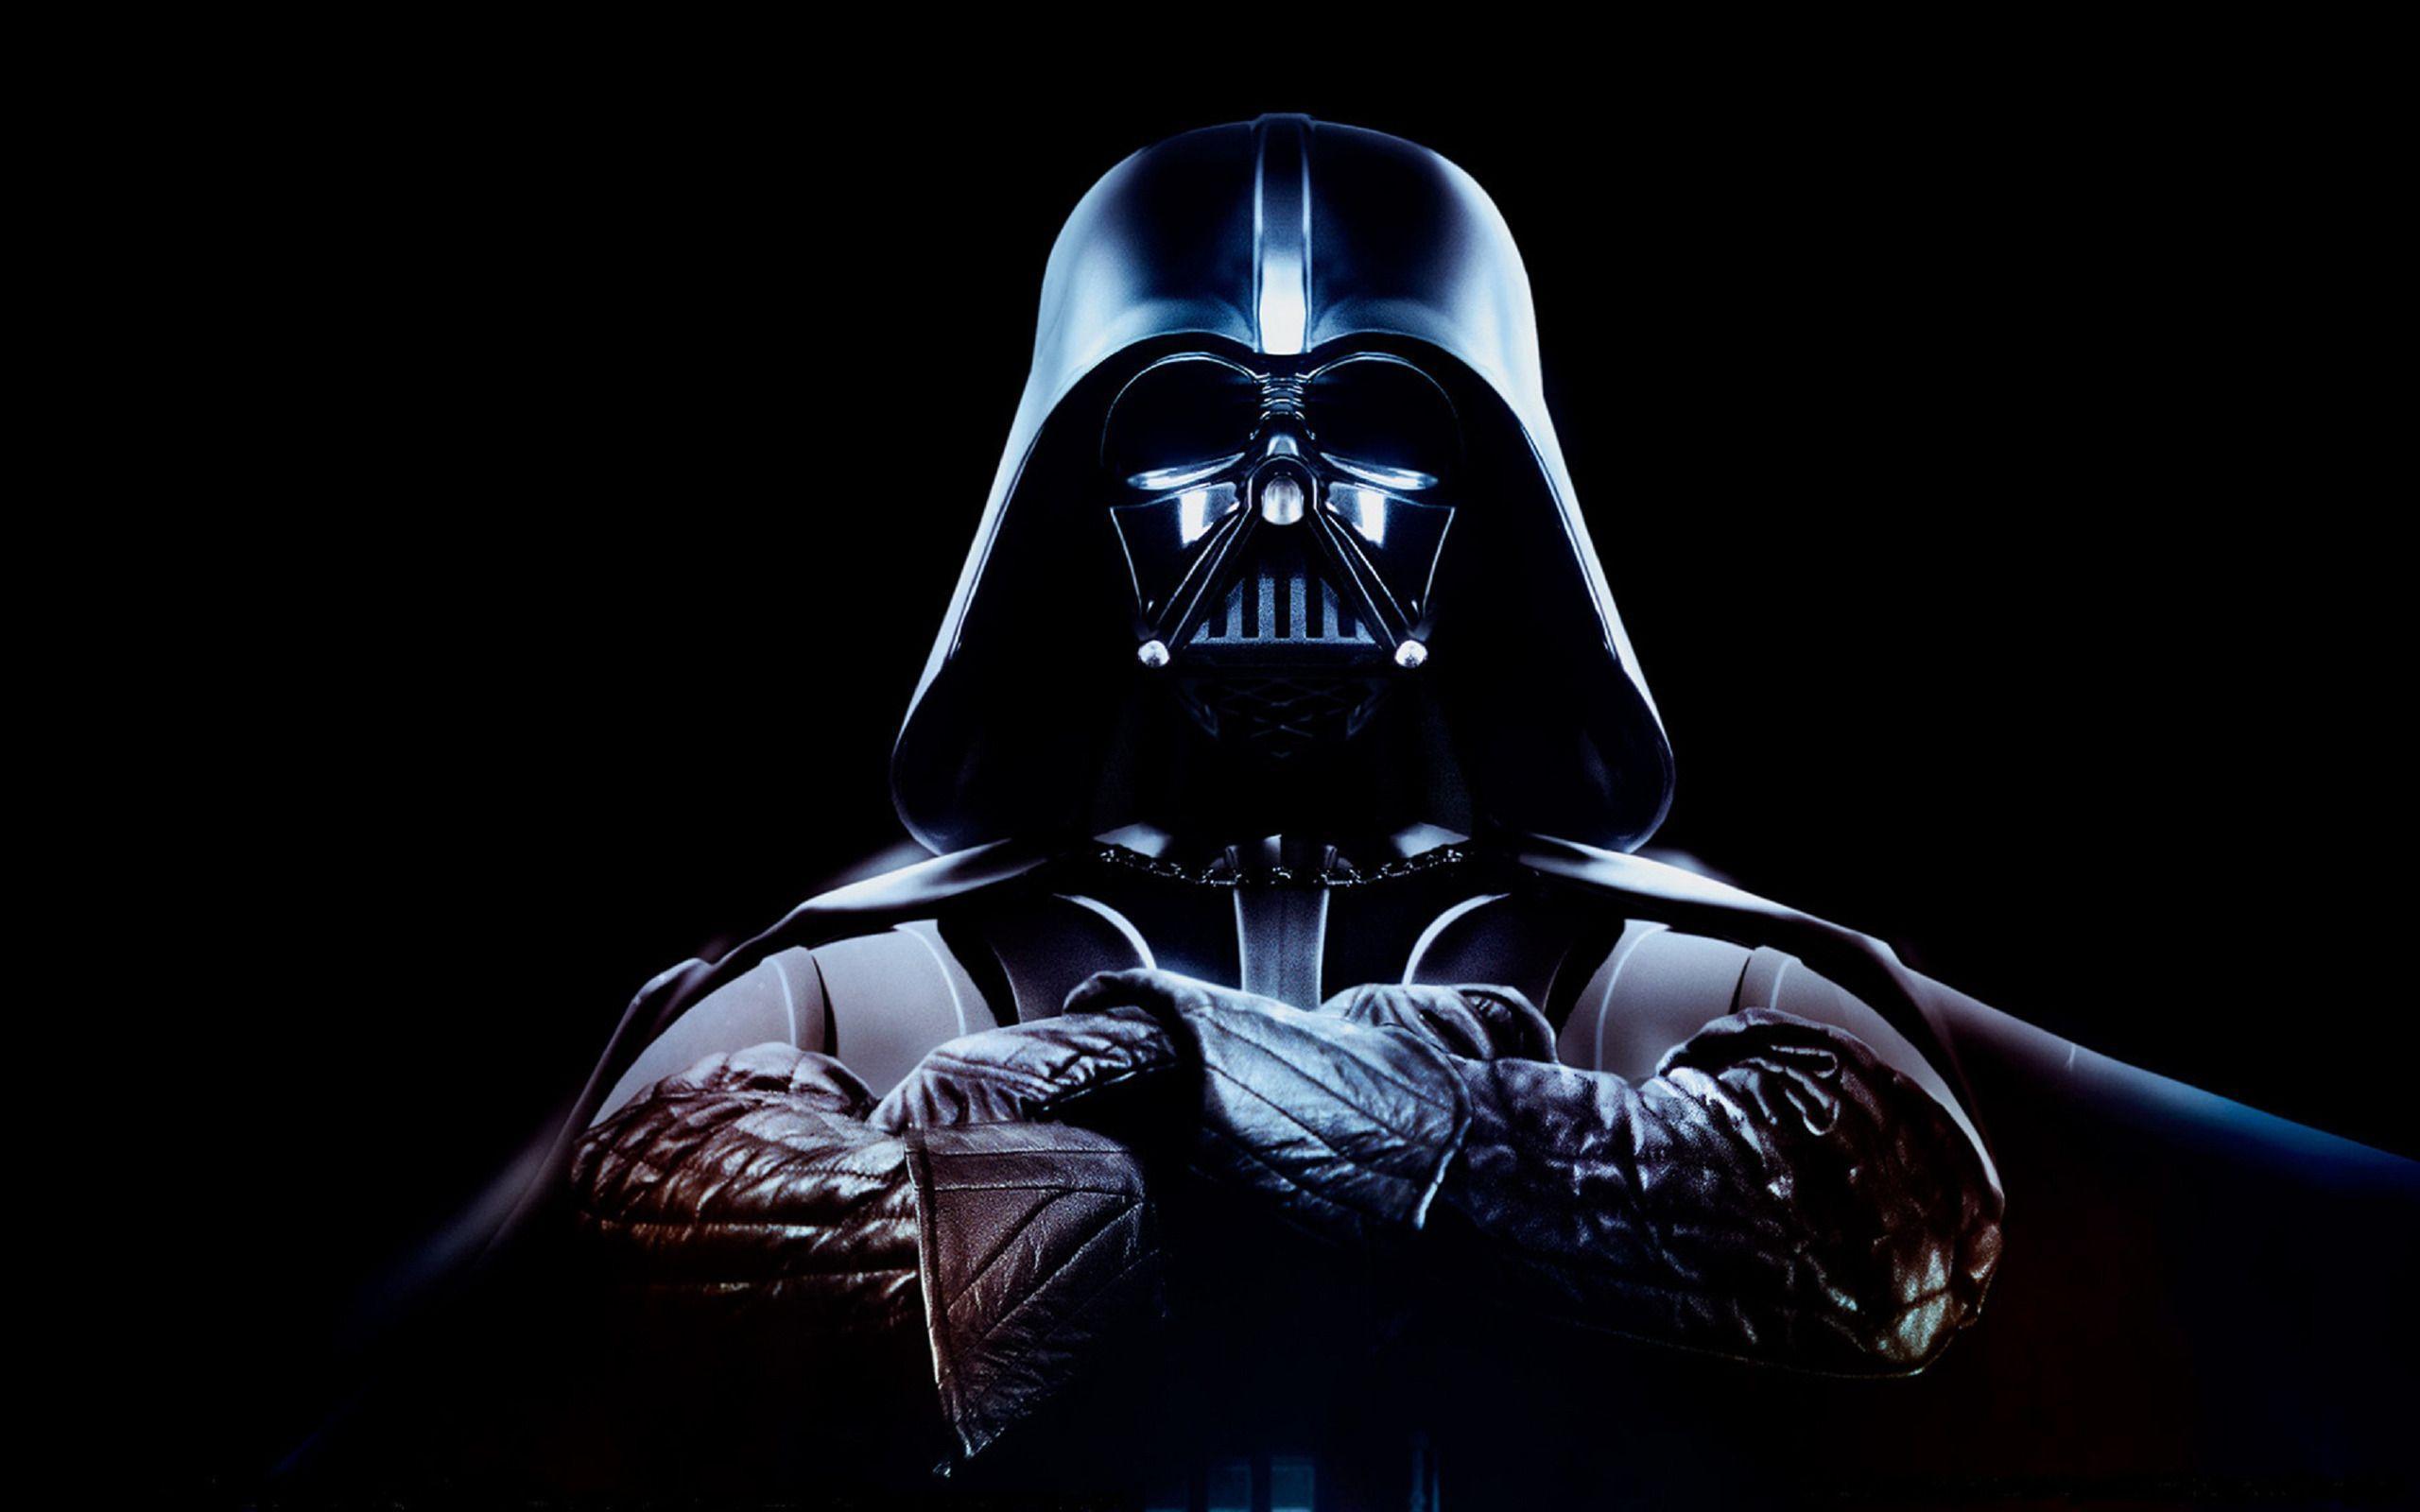 Darth Vader Wallpaper 3058 2560x1600 px